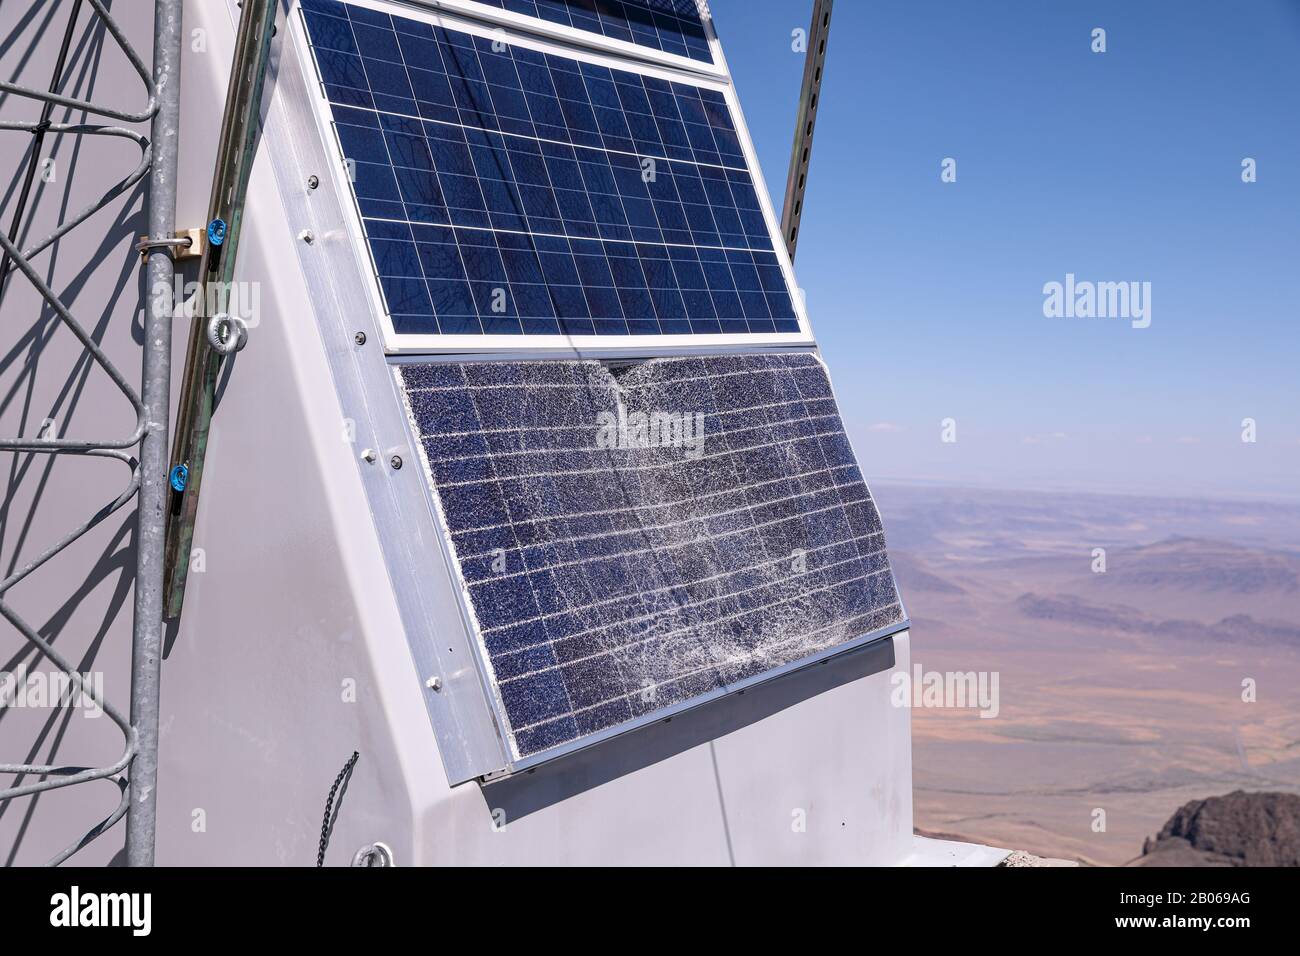 Paneles solares rotos fotografías e imágenes de alta resolución - Alamy